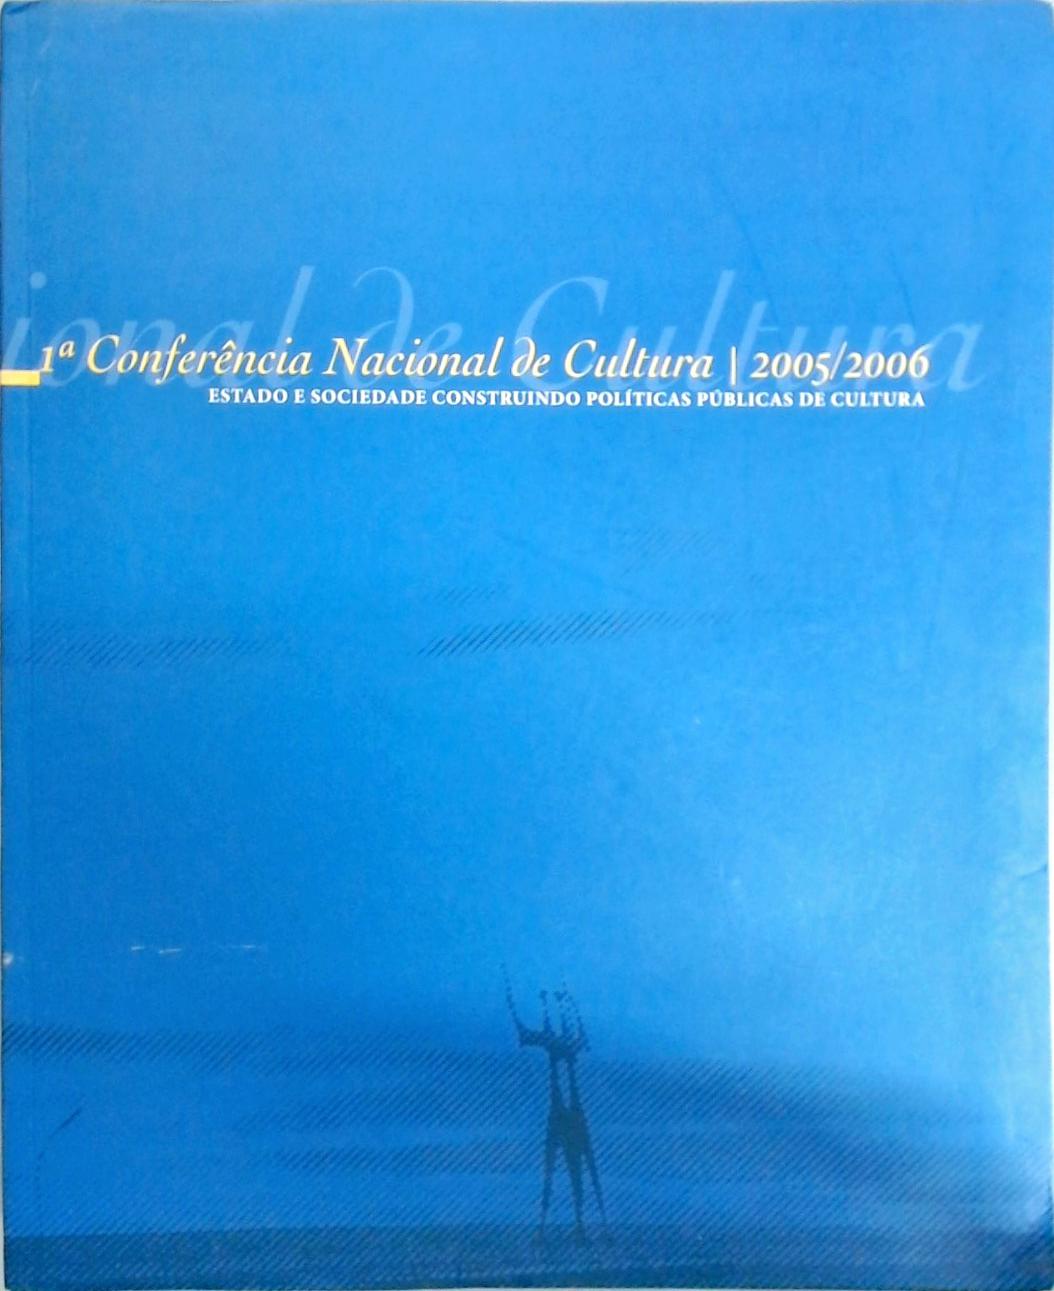 1ª Conferência Nacional de Cultura 2005 - 2006